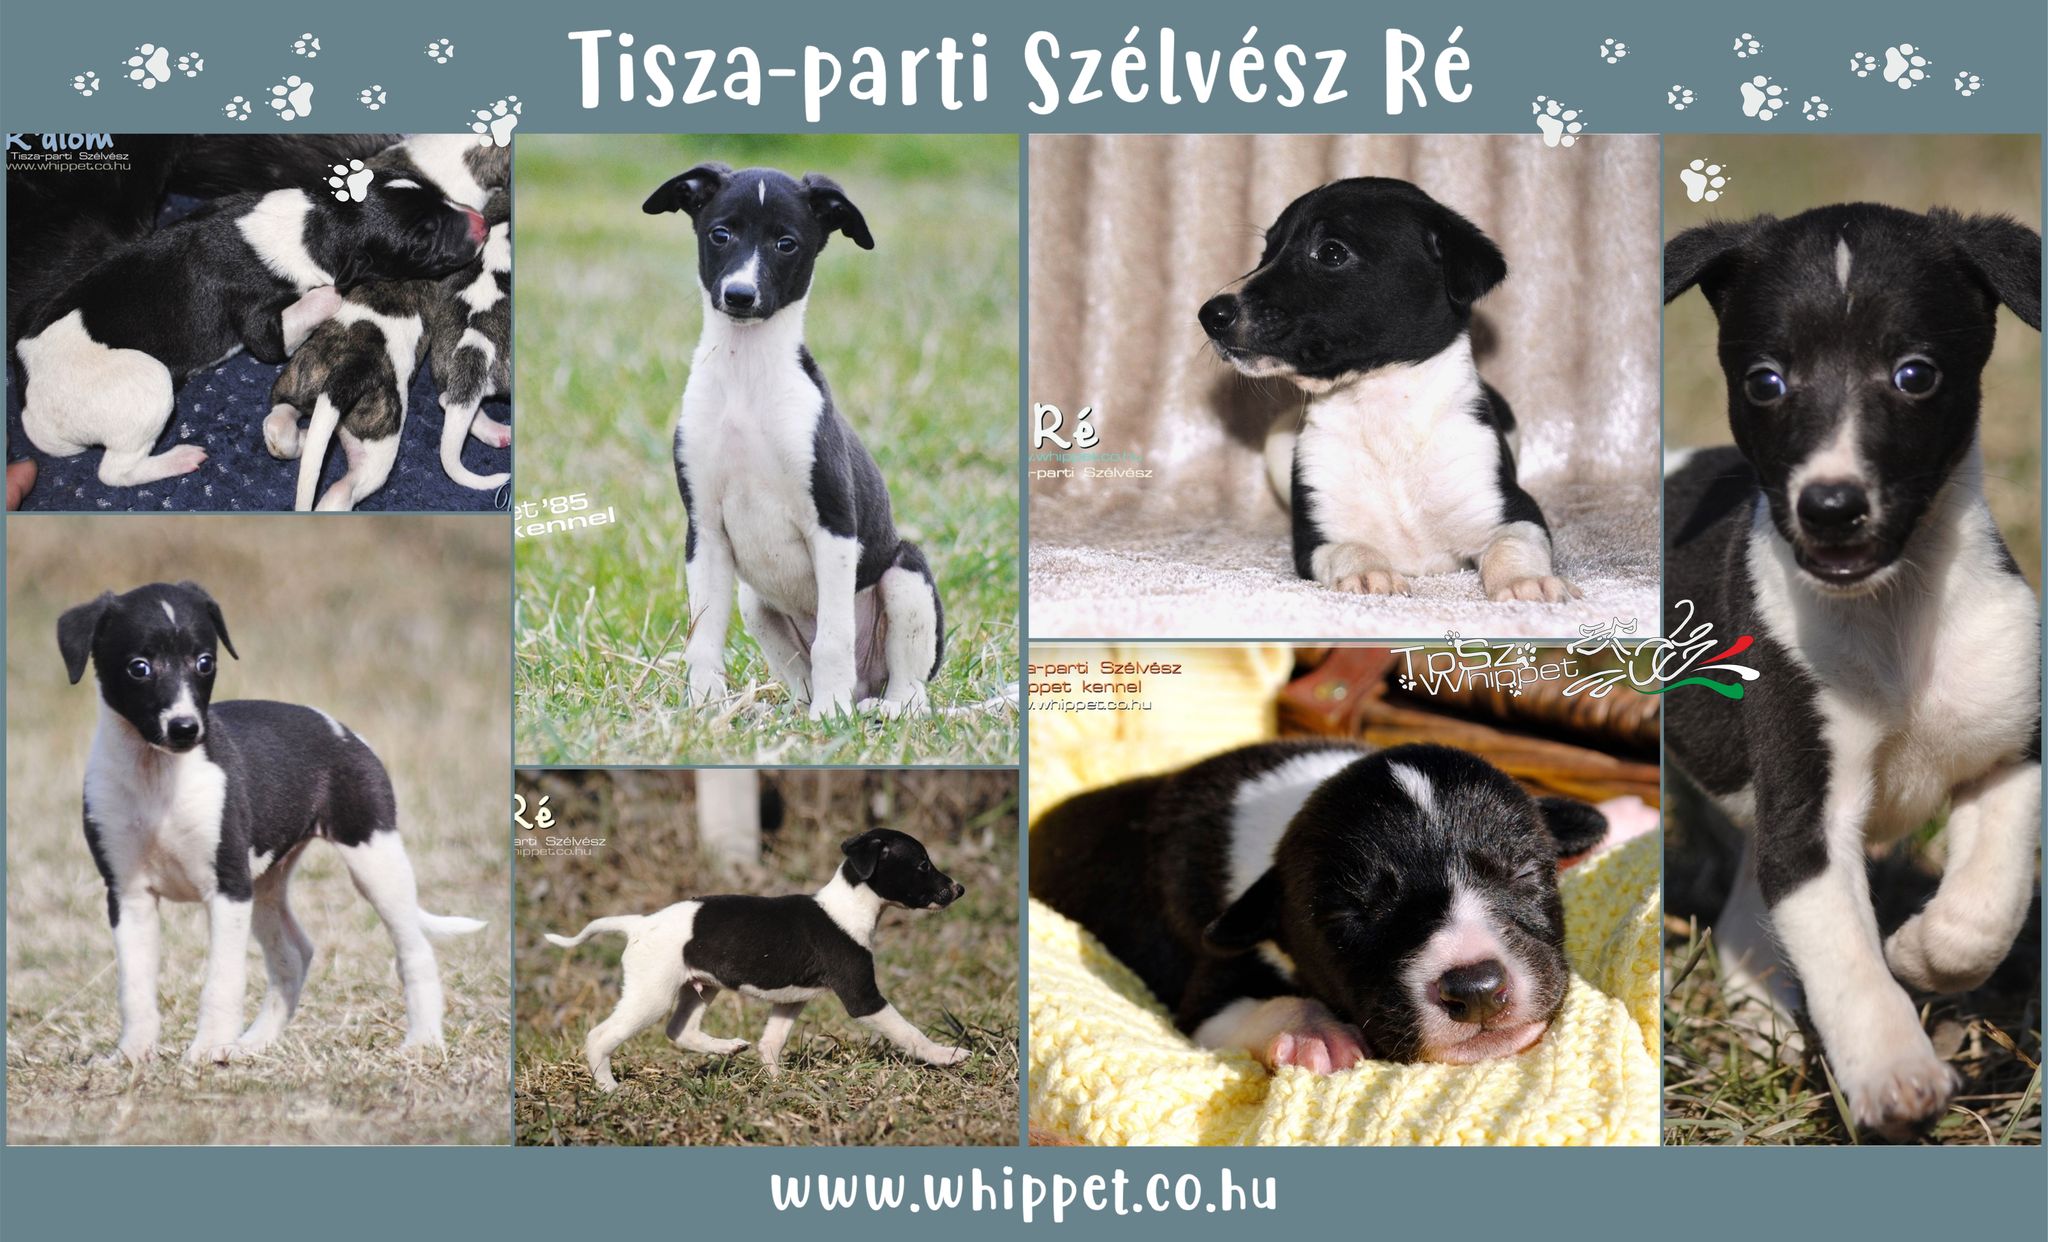 Tisza-parti Szélvész Ré whippet puppy for sale